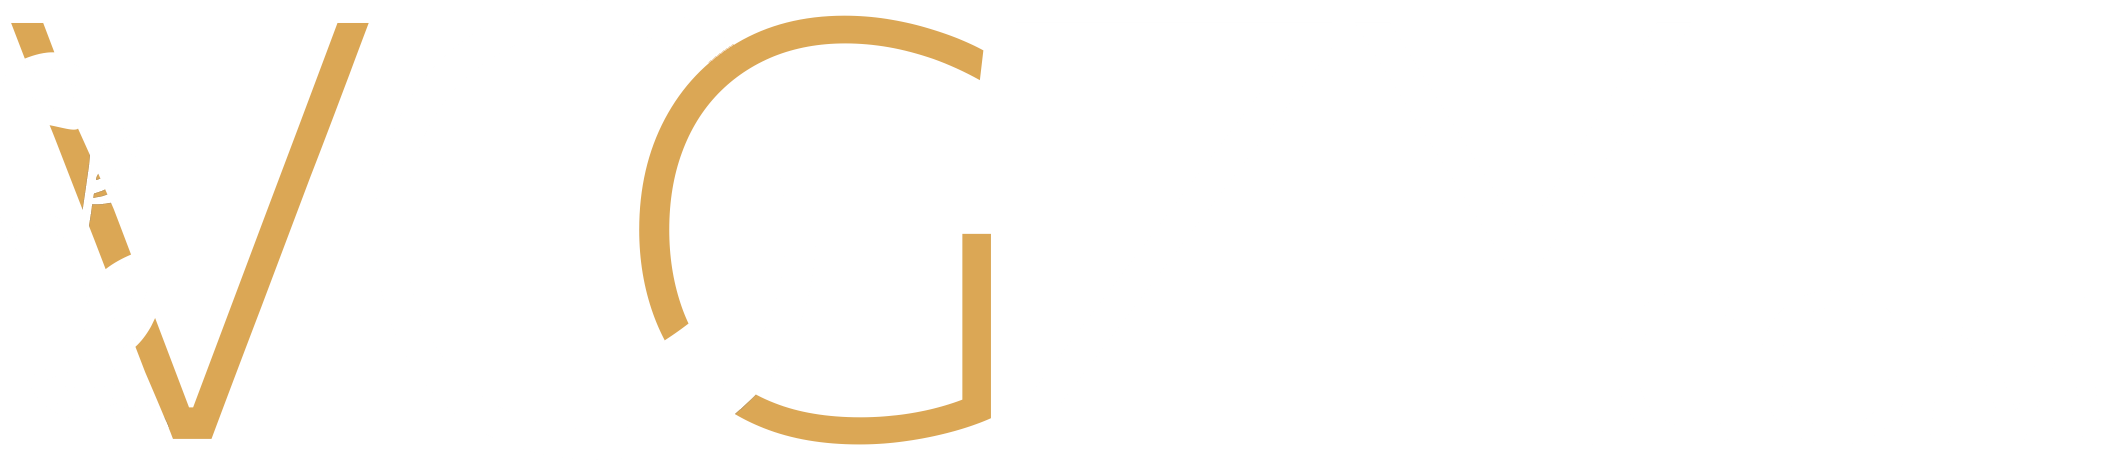 vogzy logo